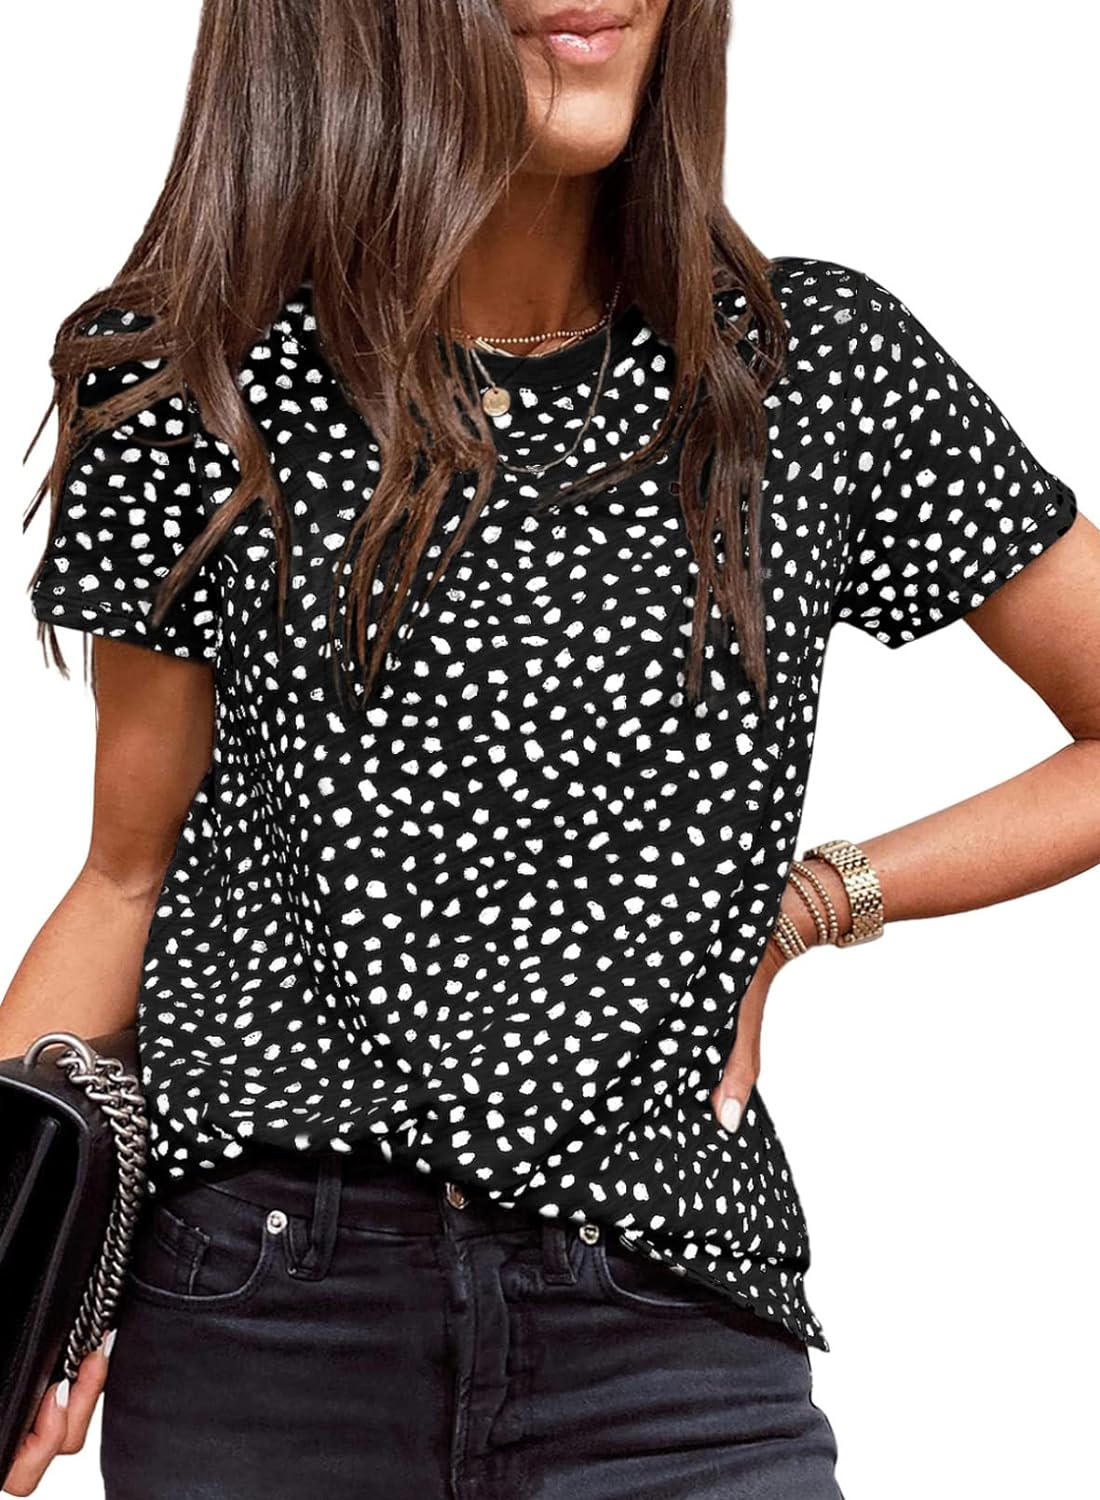 EVALESS Womens Casual Polka Dot Tops Crewneck Short Sleeve T Shirts Fashion 2023 Spring Summer Loose Fit Shirts